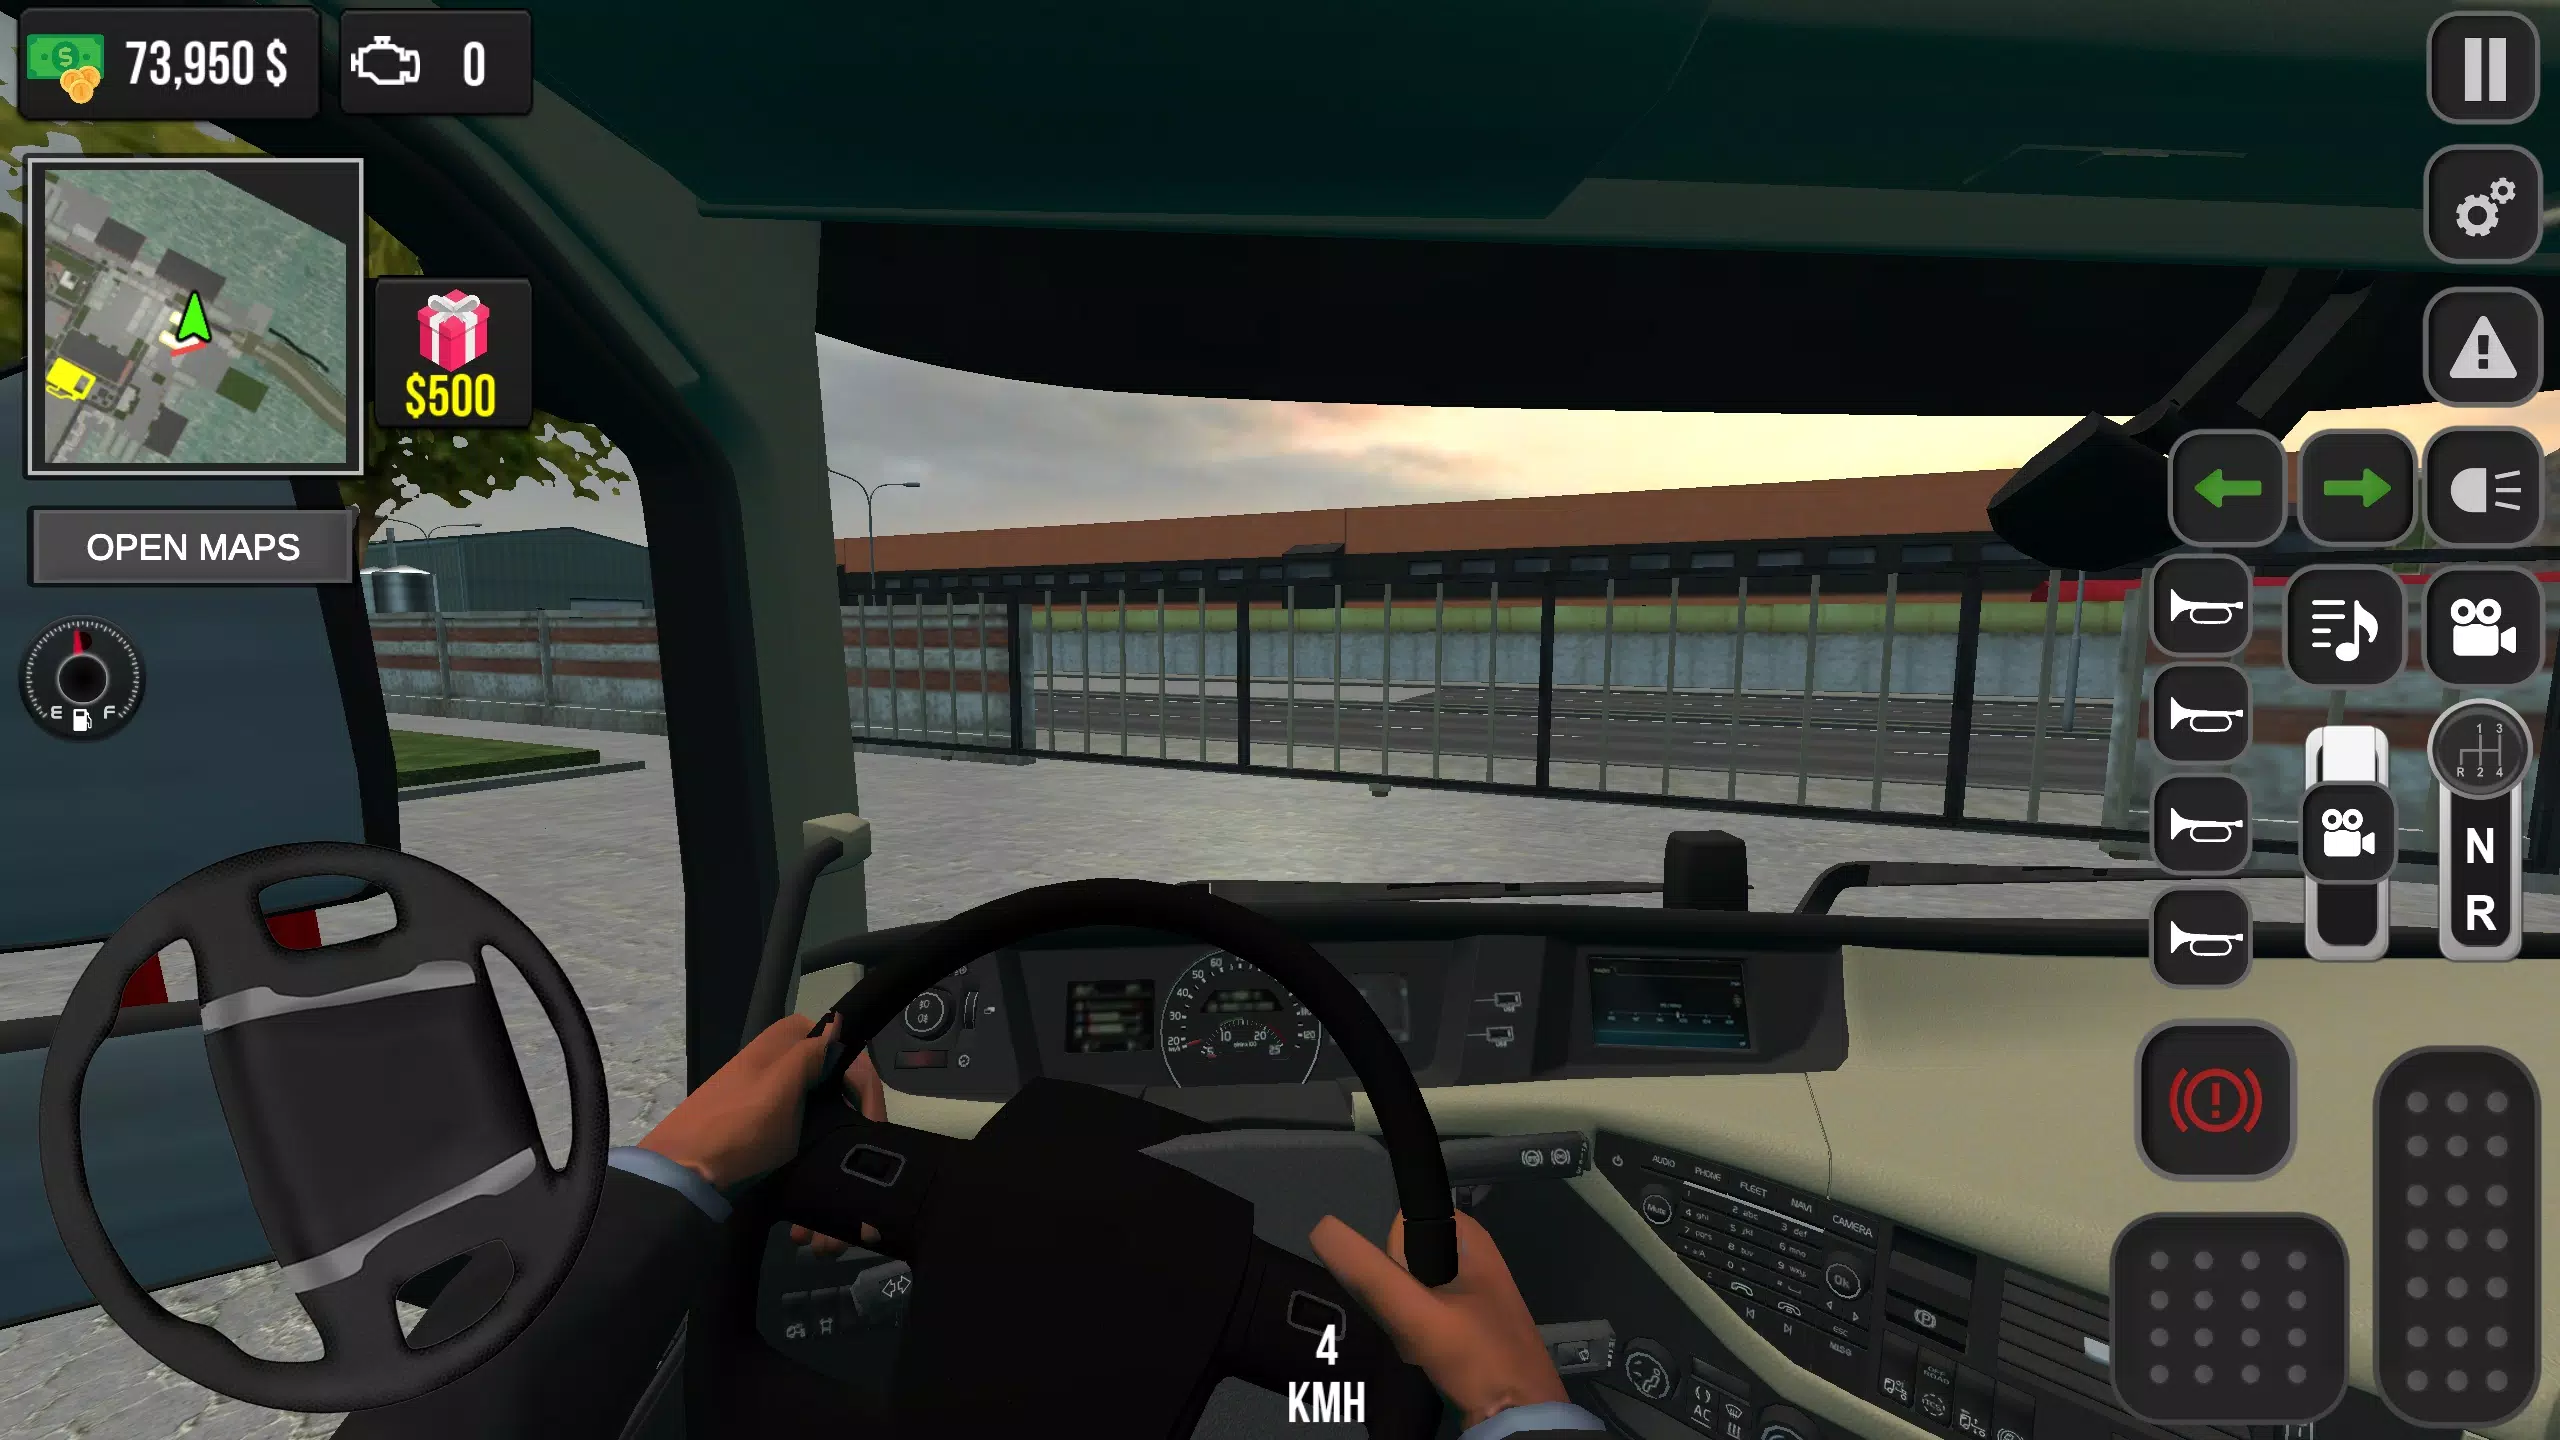 Download do APK de Simulador de caminhão real para Android